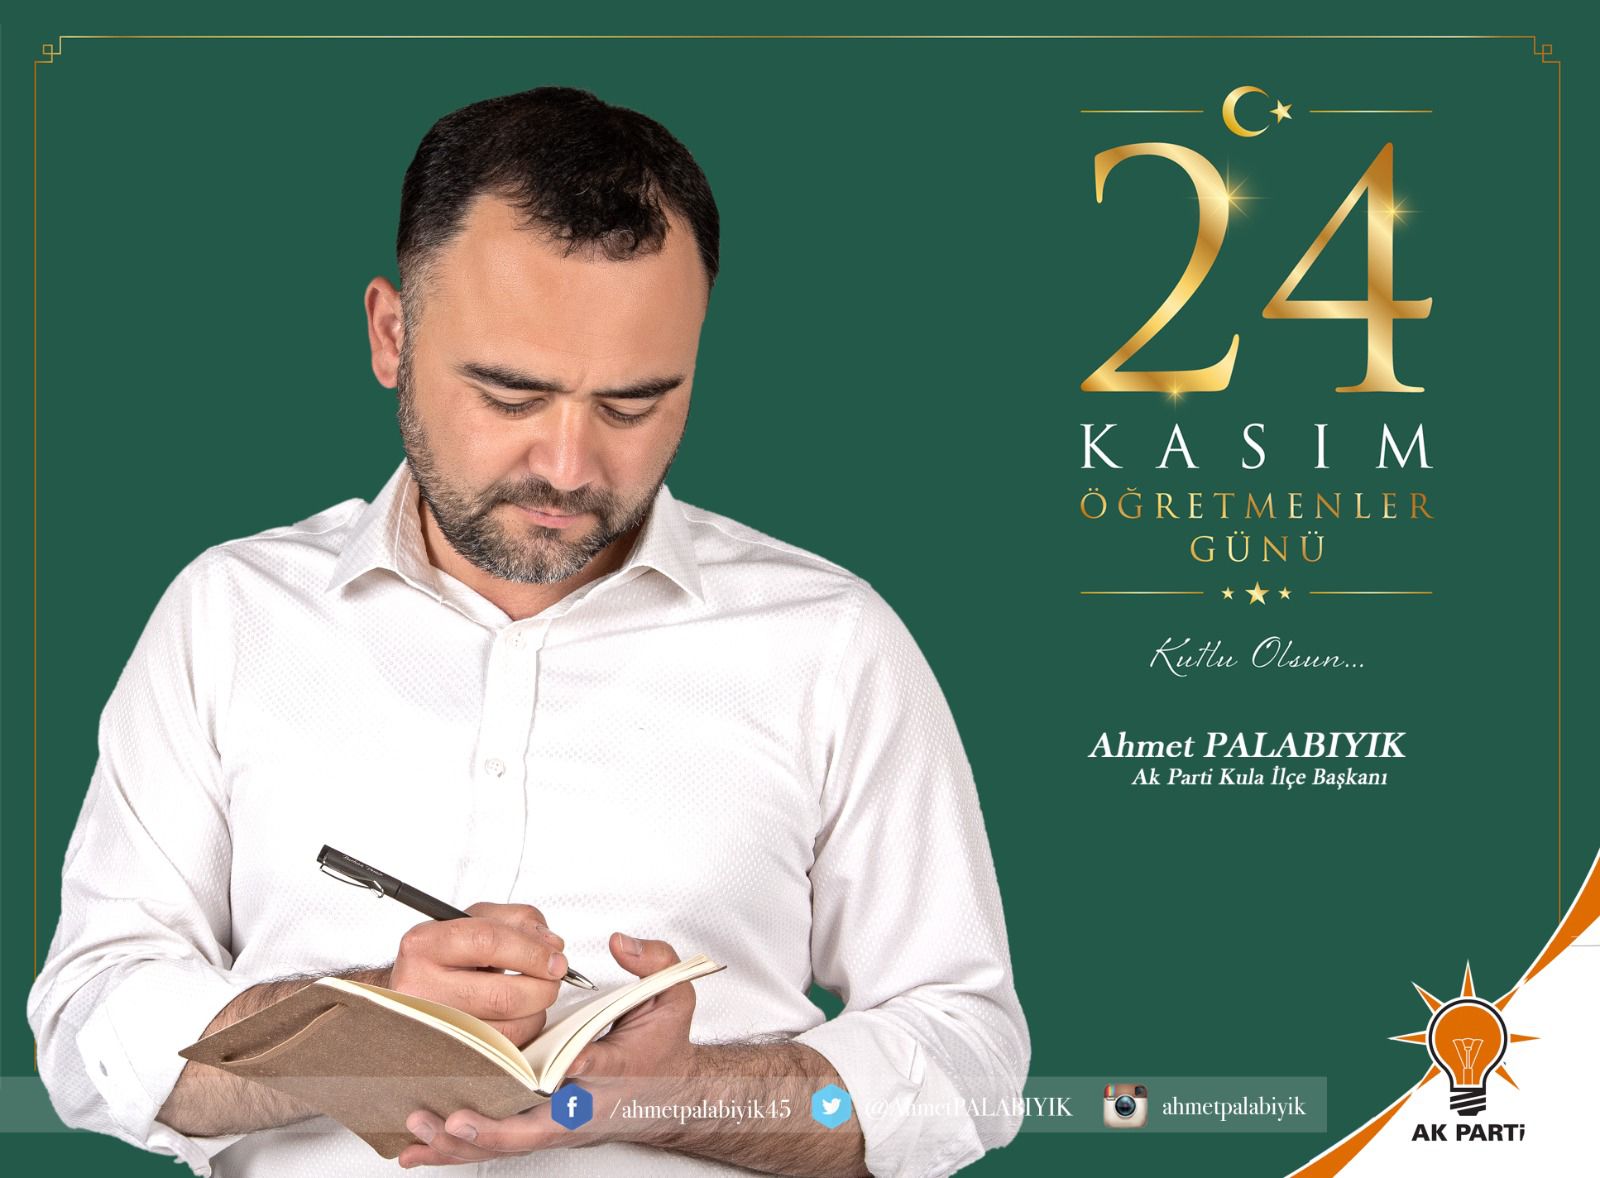 AK Parti Kula İlçe Başkanı Ahmet PALABIYIK, 24 Kasım Öğretmenler Günü nedeniyle bir mesaj yayımladı.